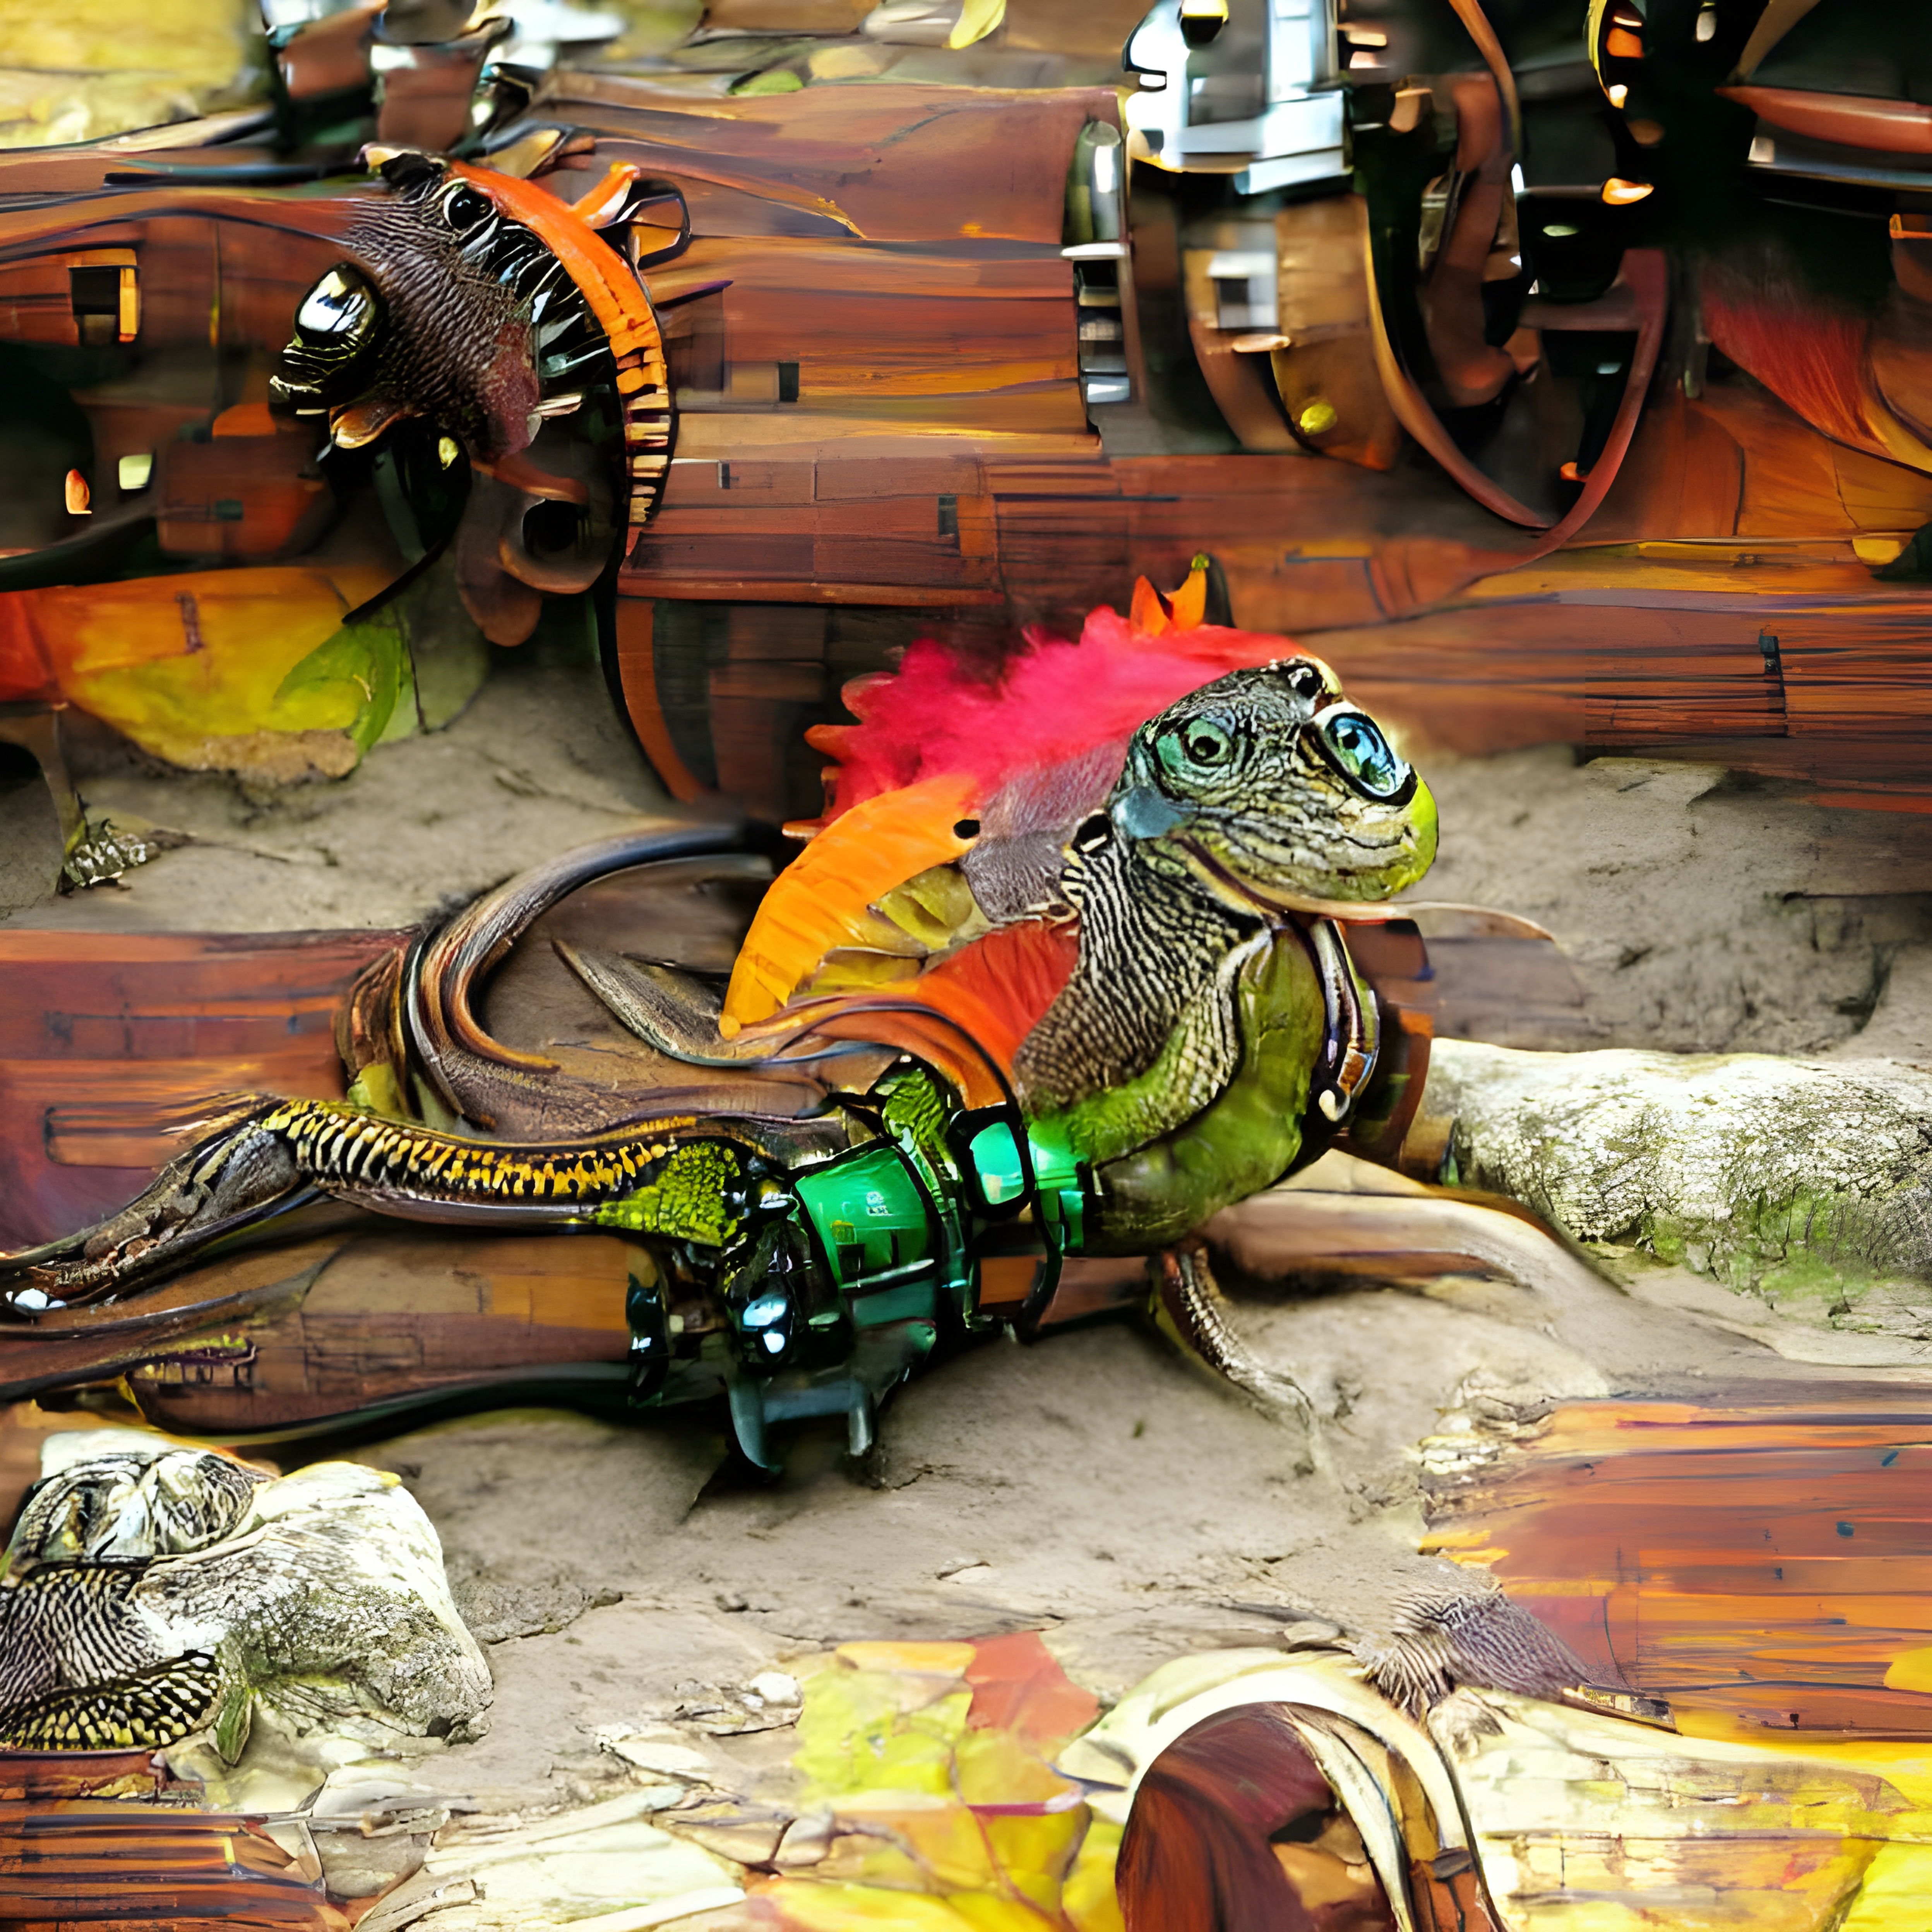 The Sweet Iguana